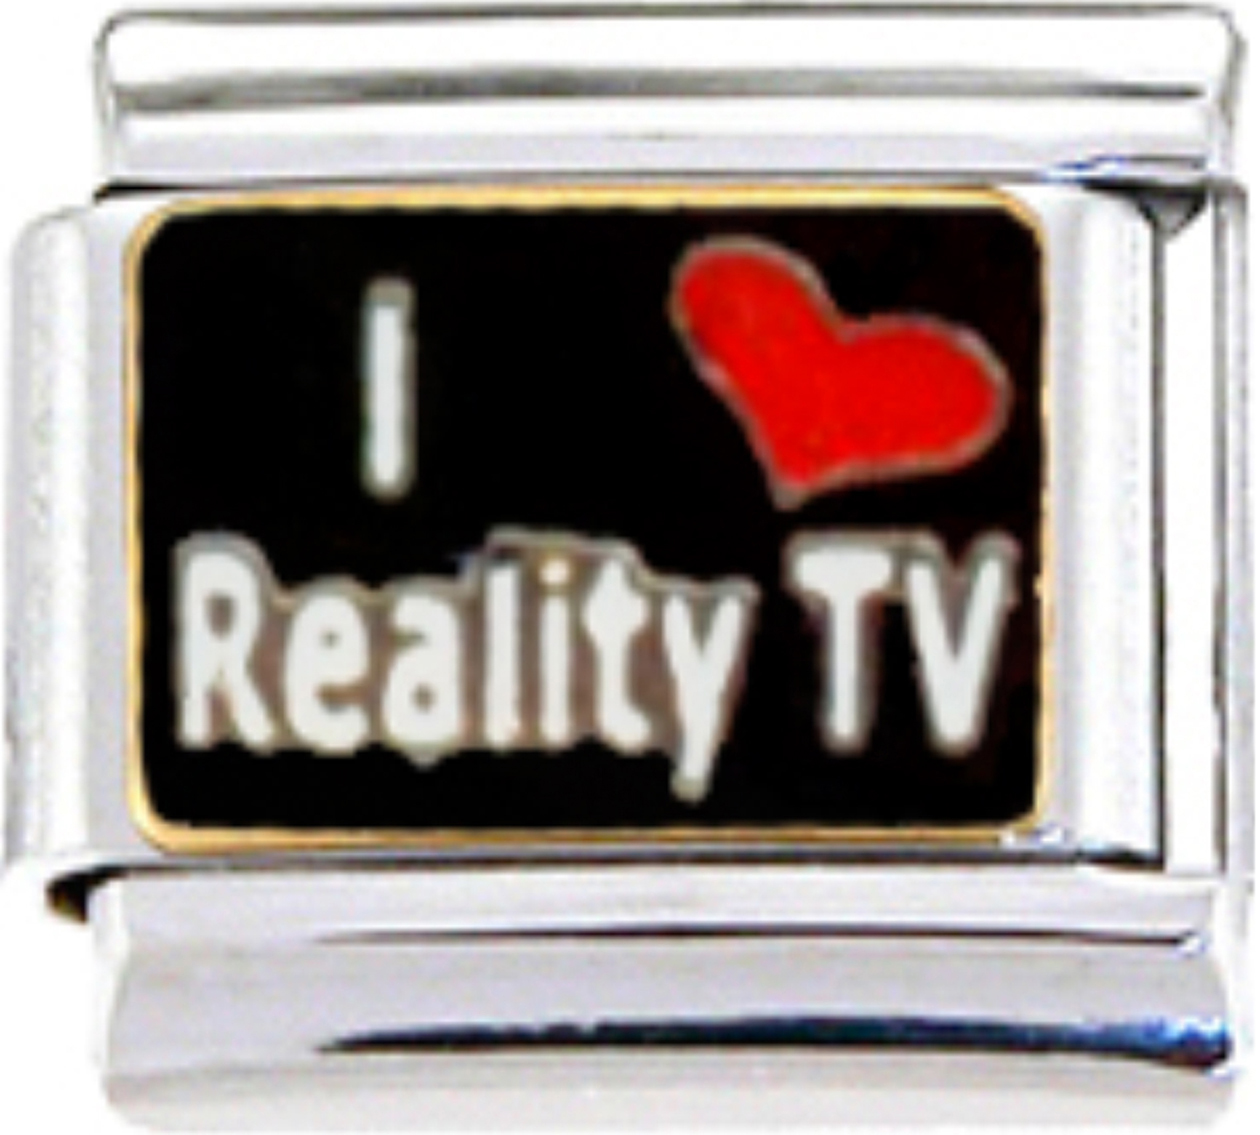 NC302-Reality-TV